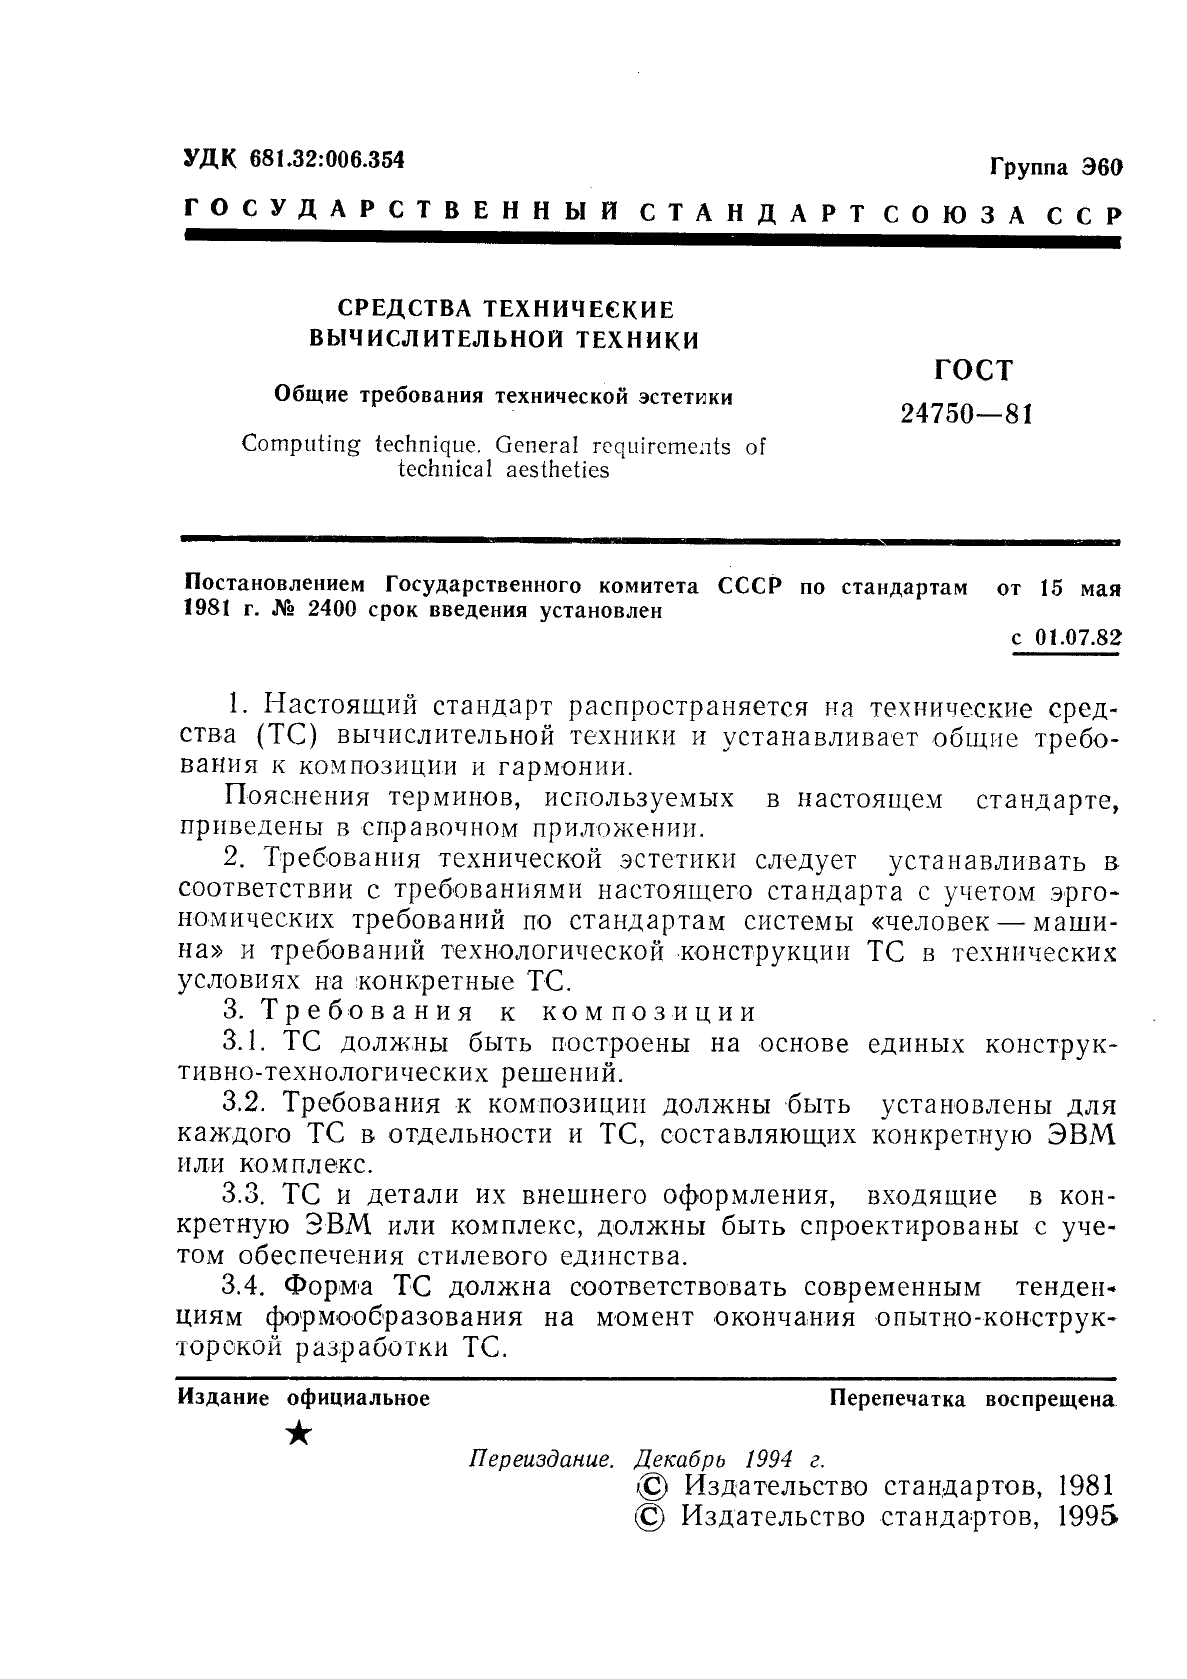 ГОСТ 24750-81 Средства технические вычислительной техники. Общие требования технической эстетики (фото 2 из 4)